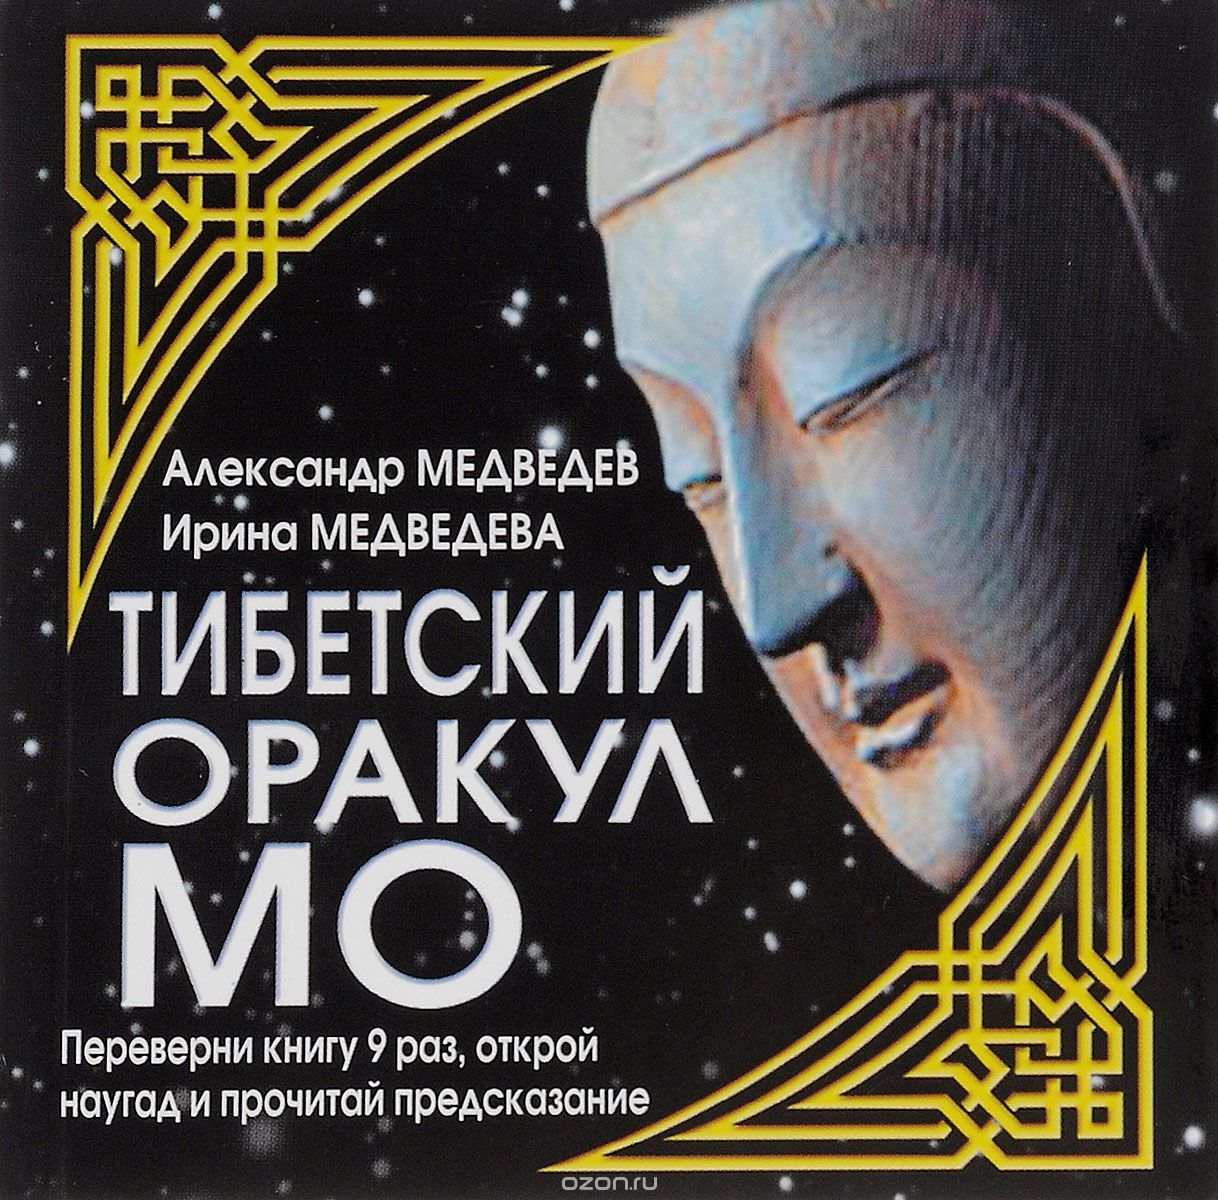 Тибетский оракул МО, Александр Медведев, Ирина Медведева